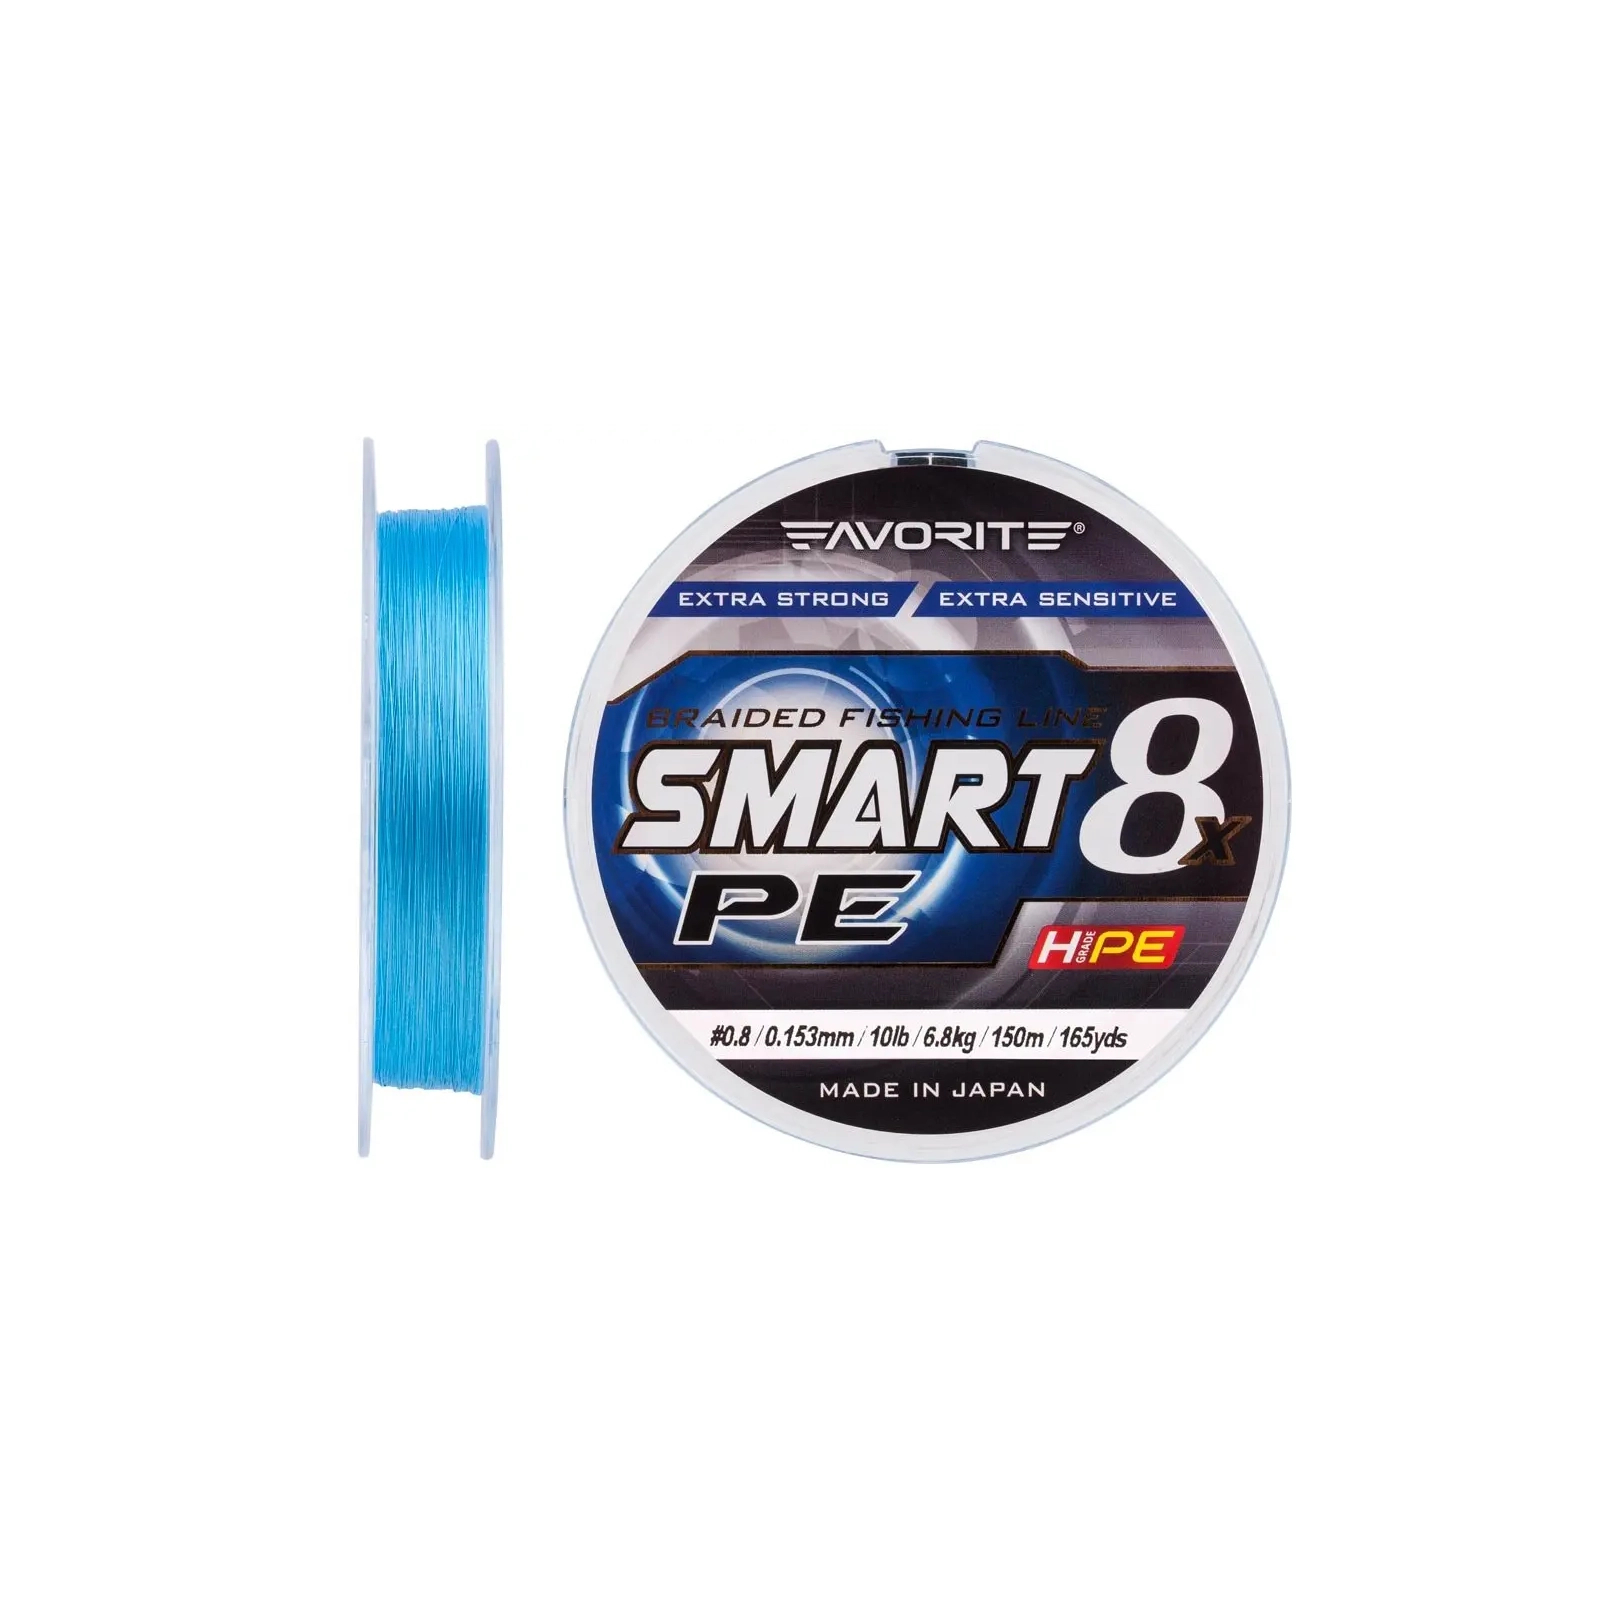 Шнур Favorite Smart PE 8x 150м 0.8/0.153mm 10lb/6.8kg Sky Blue (1693.10.72) зображення 2